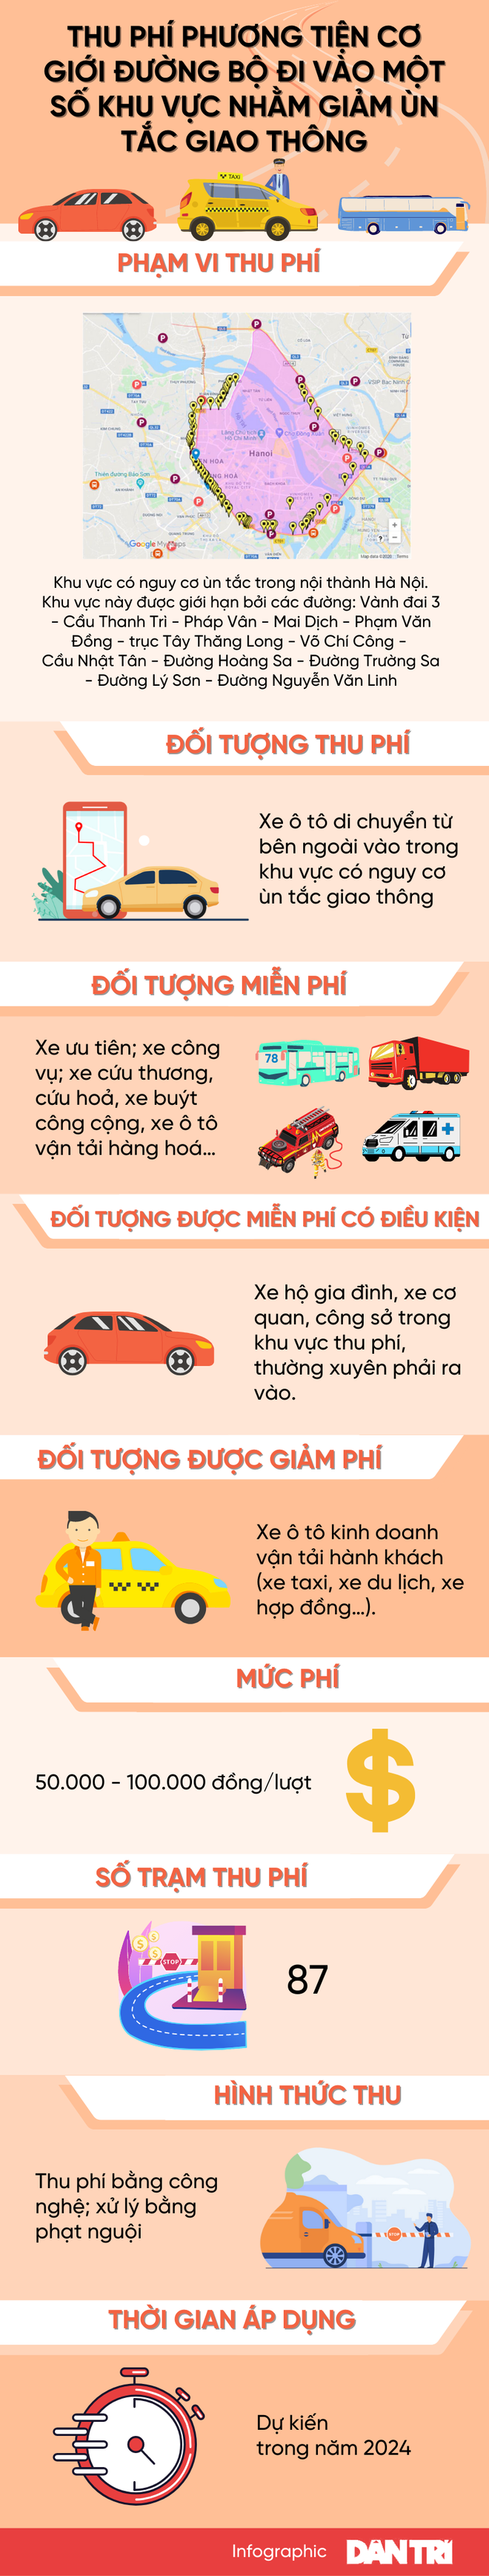 "Tất tần tật" về đề án thu phí ô tô vào nội đô Hà Nội